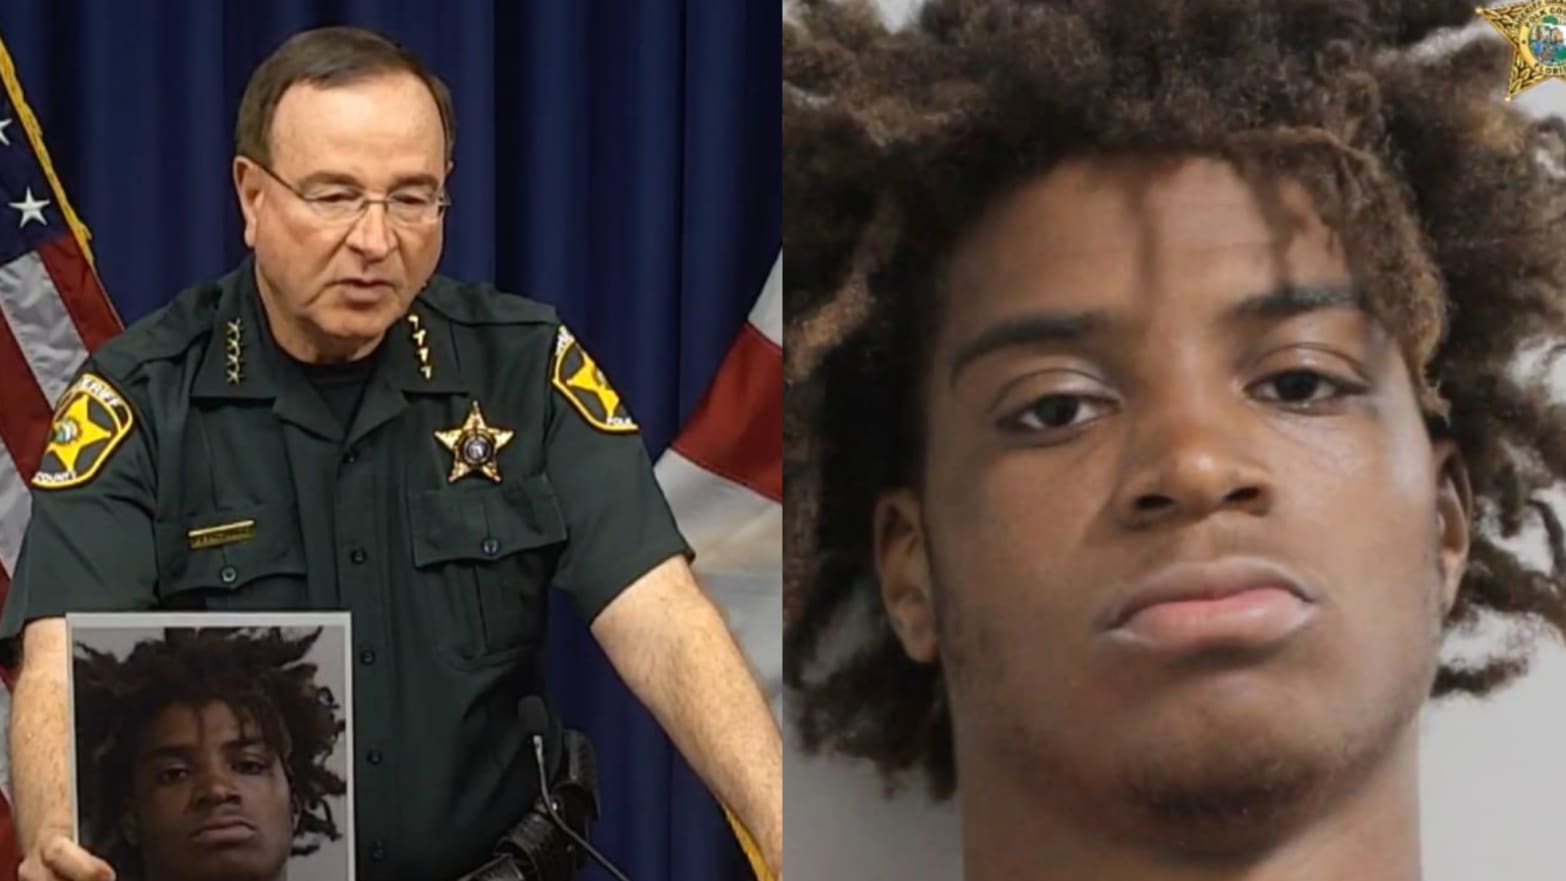 Murderer vs. Sheriffs